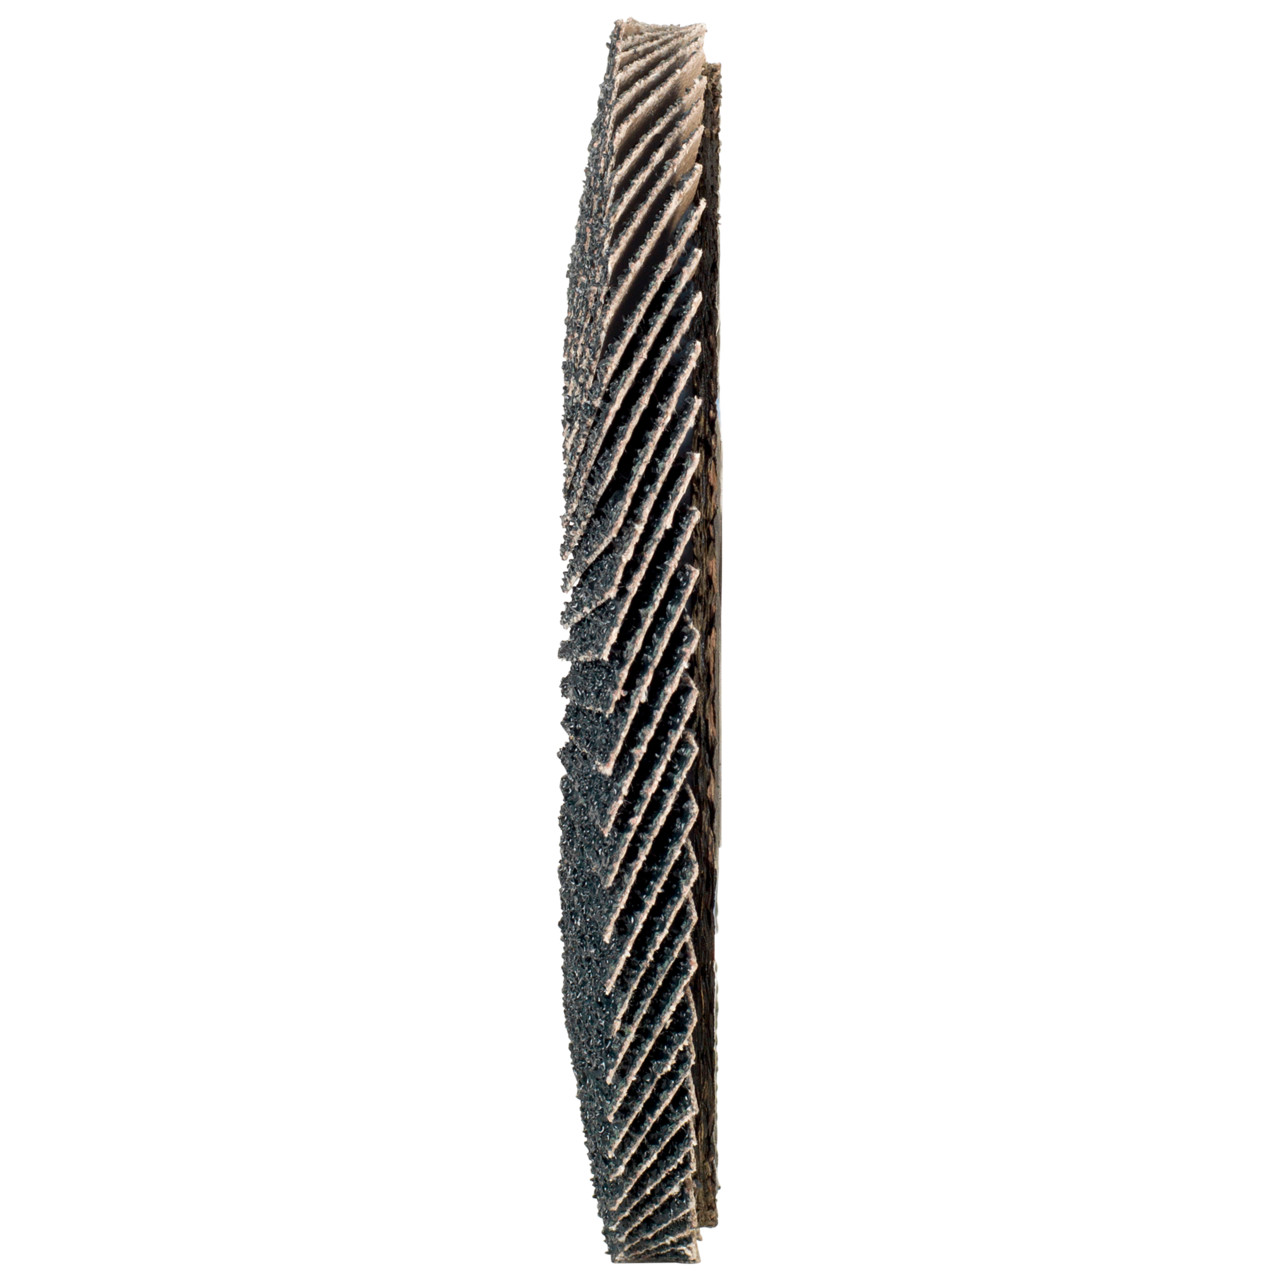 TYROLIT Fächerscheibe DxH 115x22,2 2in1 für Stahl & Edelstahl, P40, Form: 28A - gerade Ausführung (Glasfaserträgerkörperausführung), Art. 668686